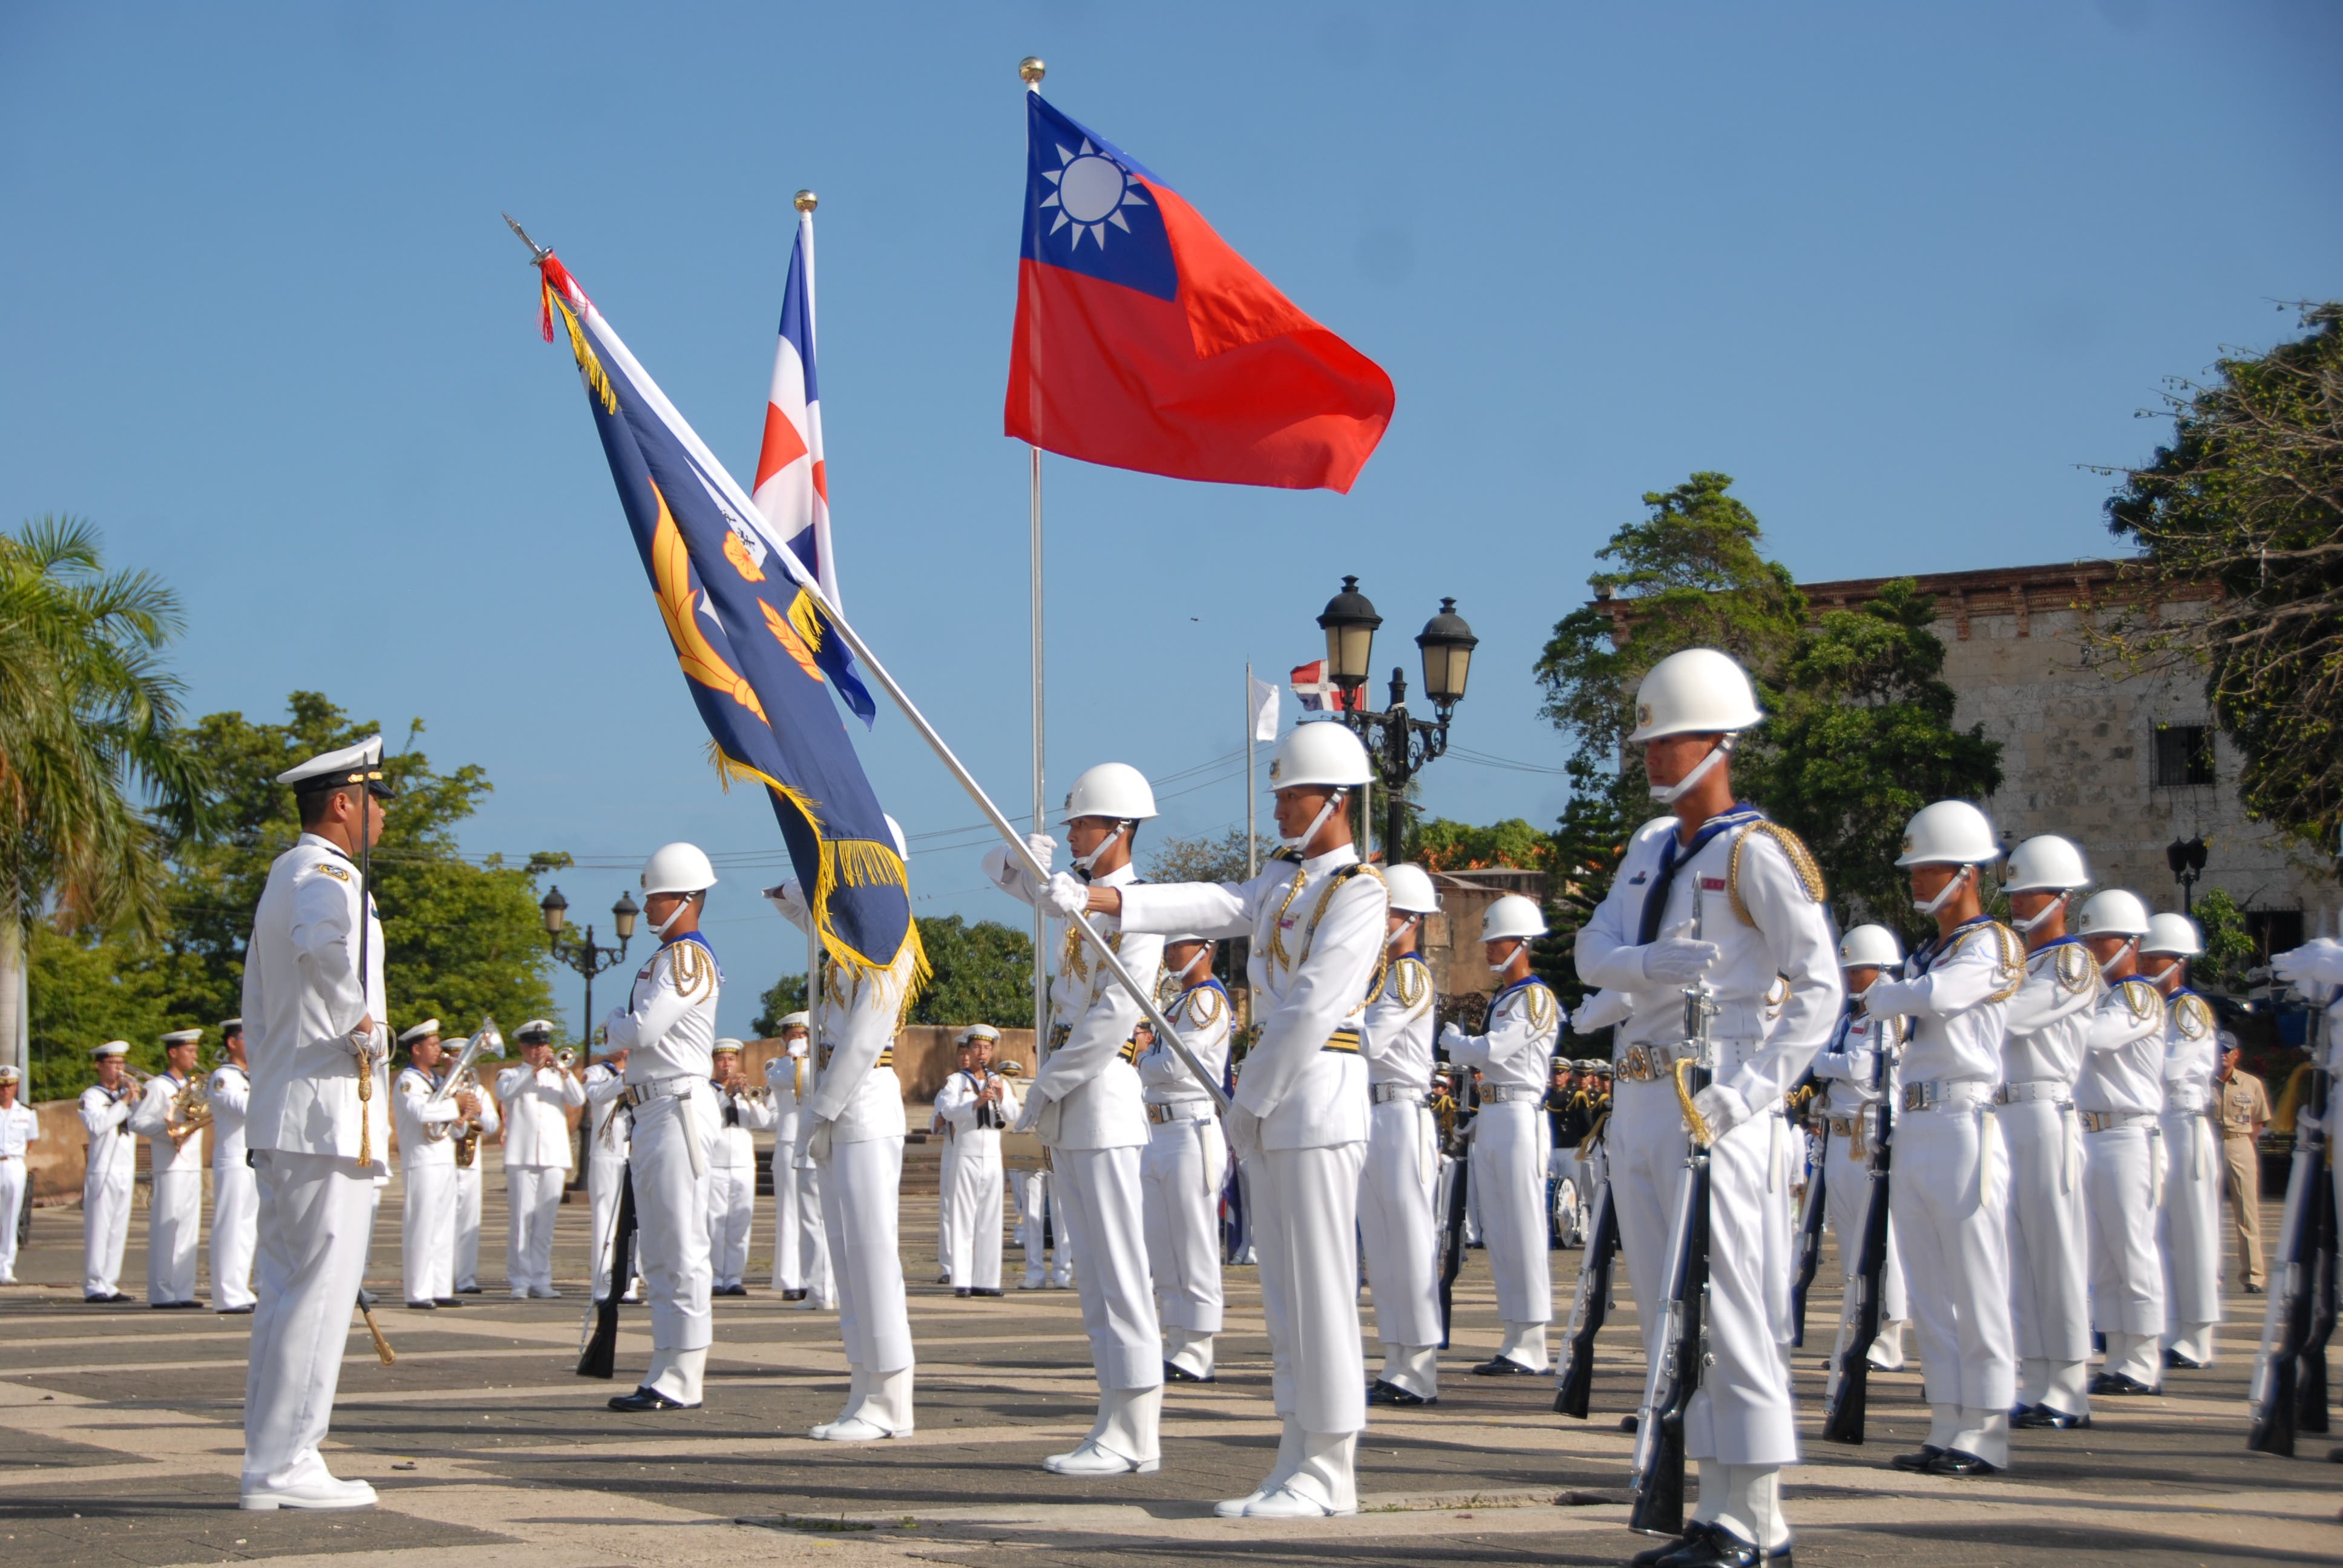 Finaliza con éxito visita de Escuadra Naval de Taiwán en Muelle Don Diego